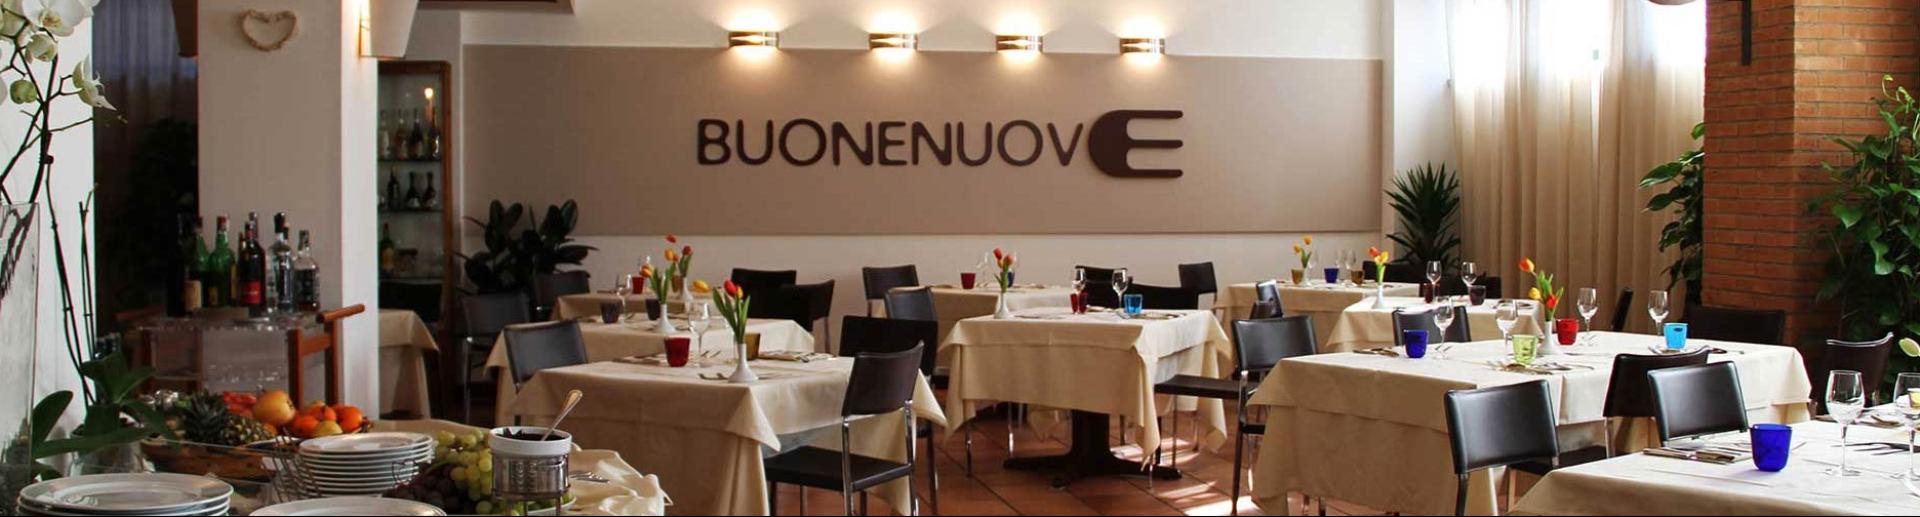 chocohotel it ristorante-buonenuove-perugia 012